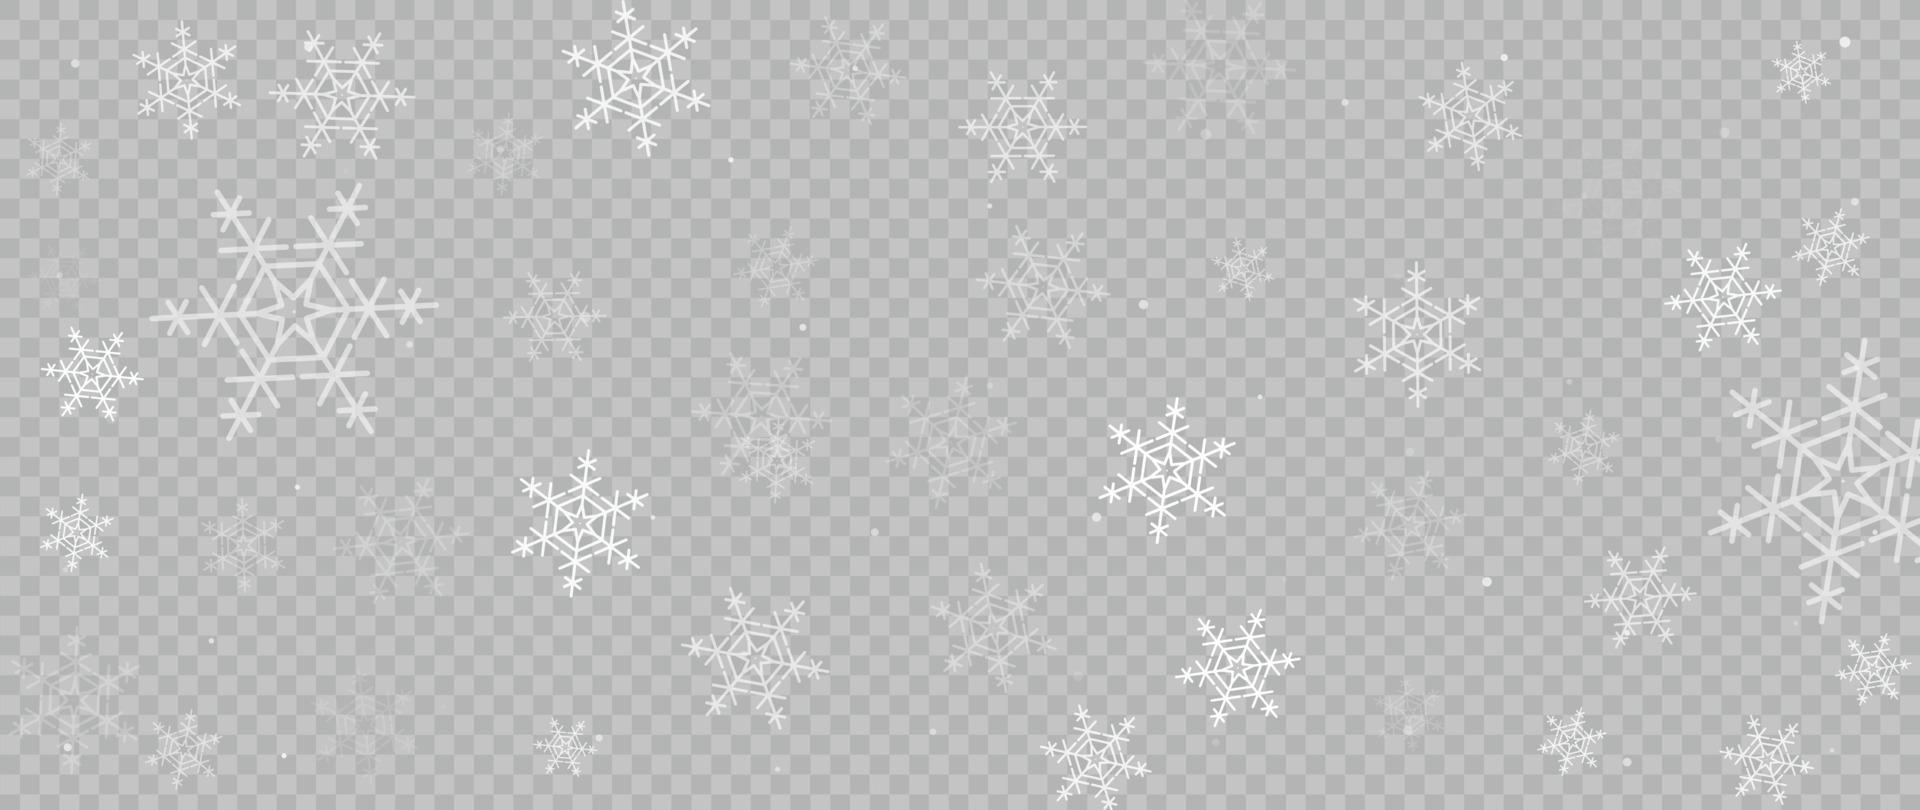 elegant winter sneeuwvlok achtergrond vector illustratie. luxe decoratief sneeuwvlokken Aan rooster transparantie achtergrond. ontwerp geschikt voor uitnodiging kaart, groet, behang, poster, spandoek.